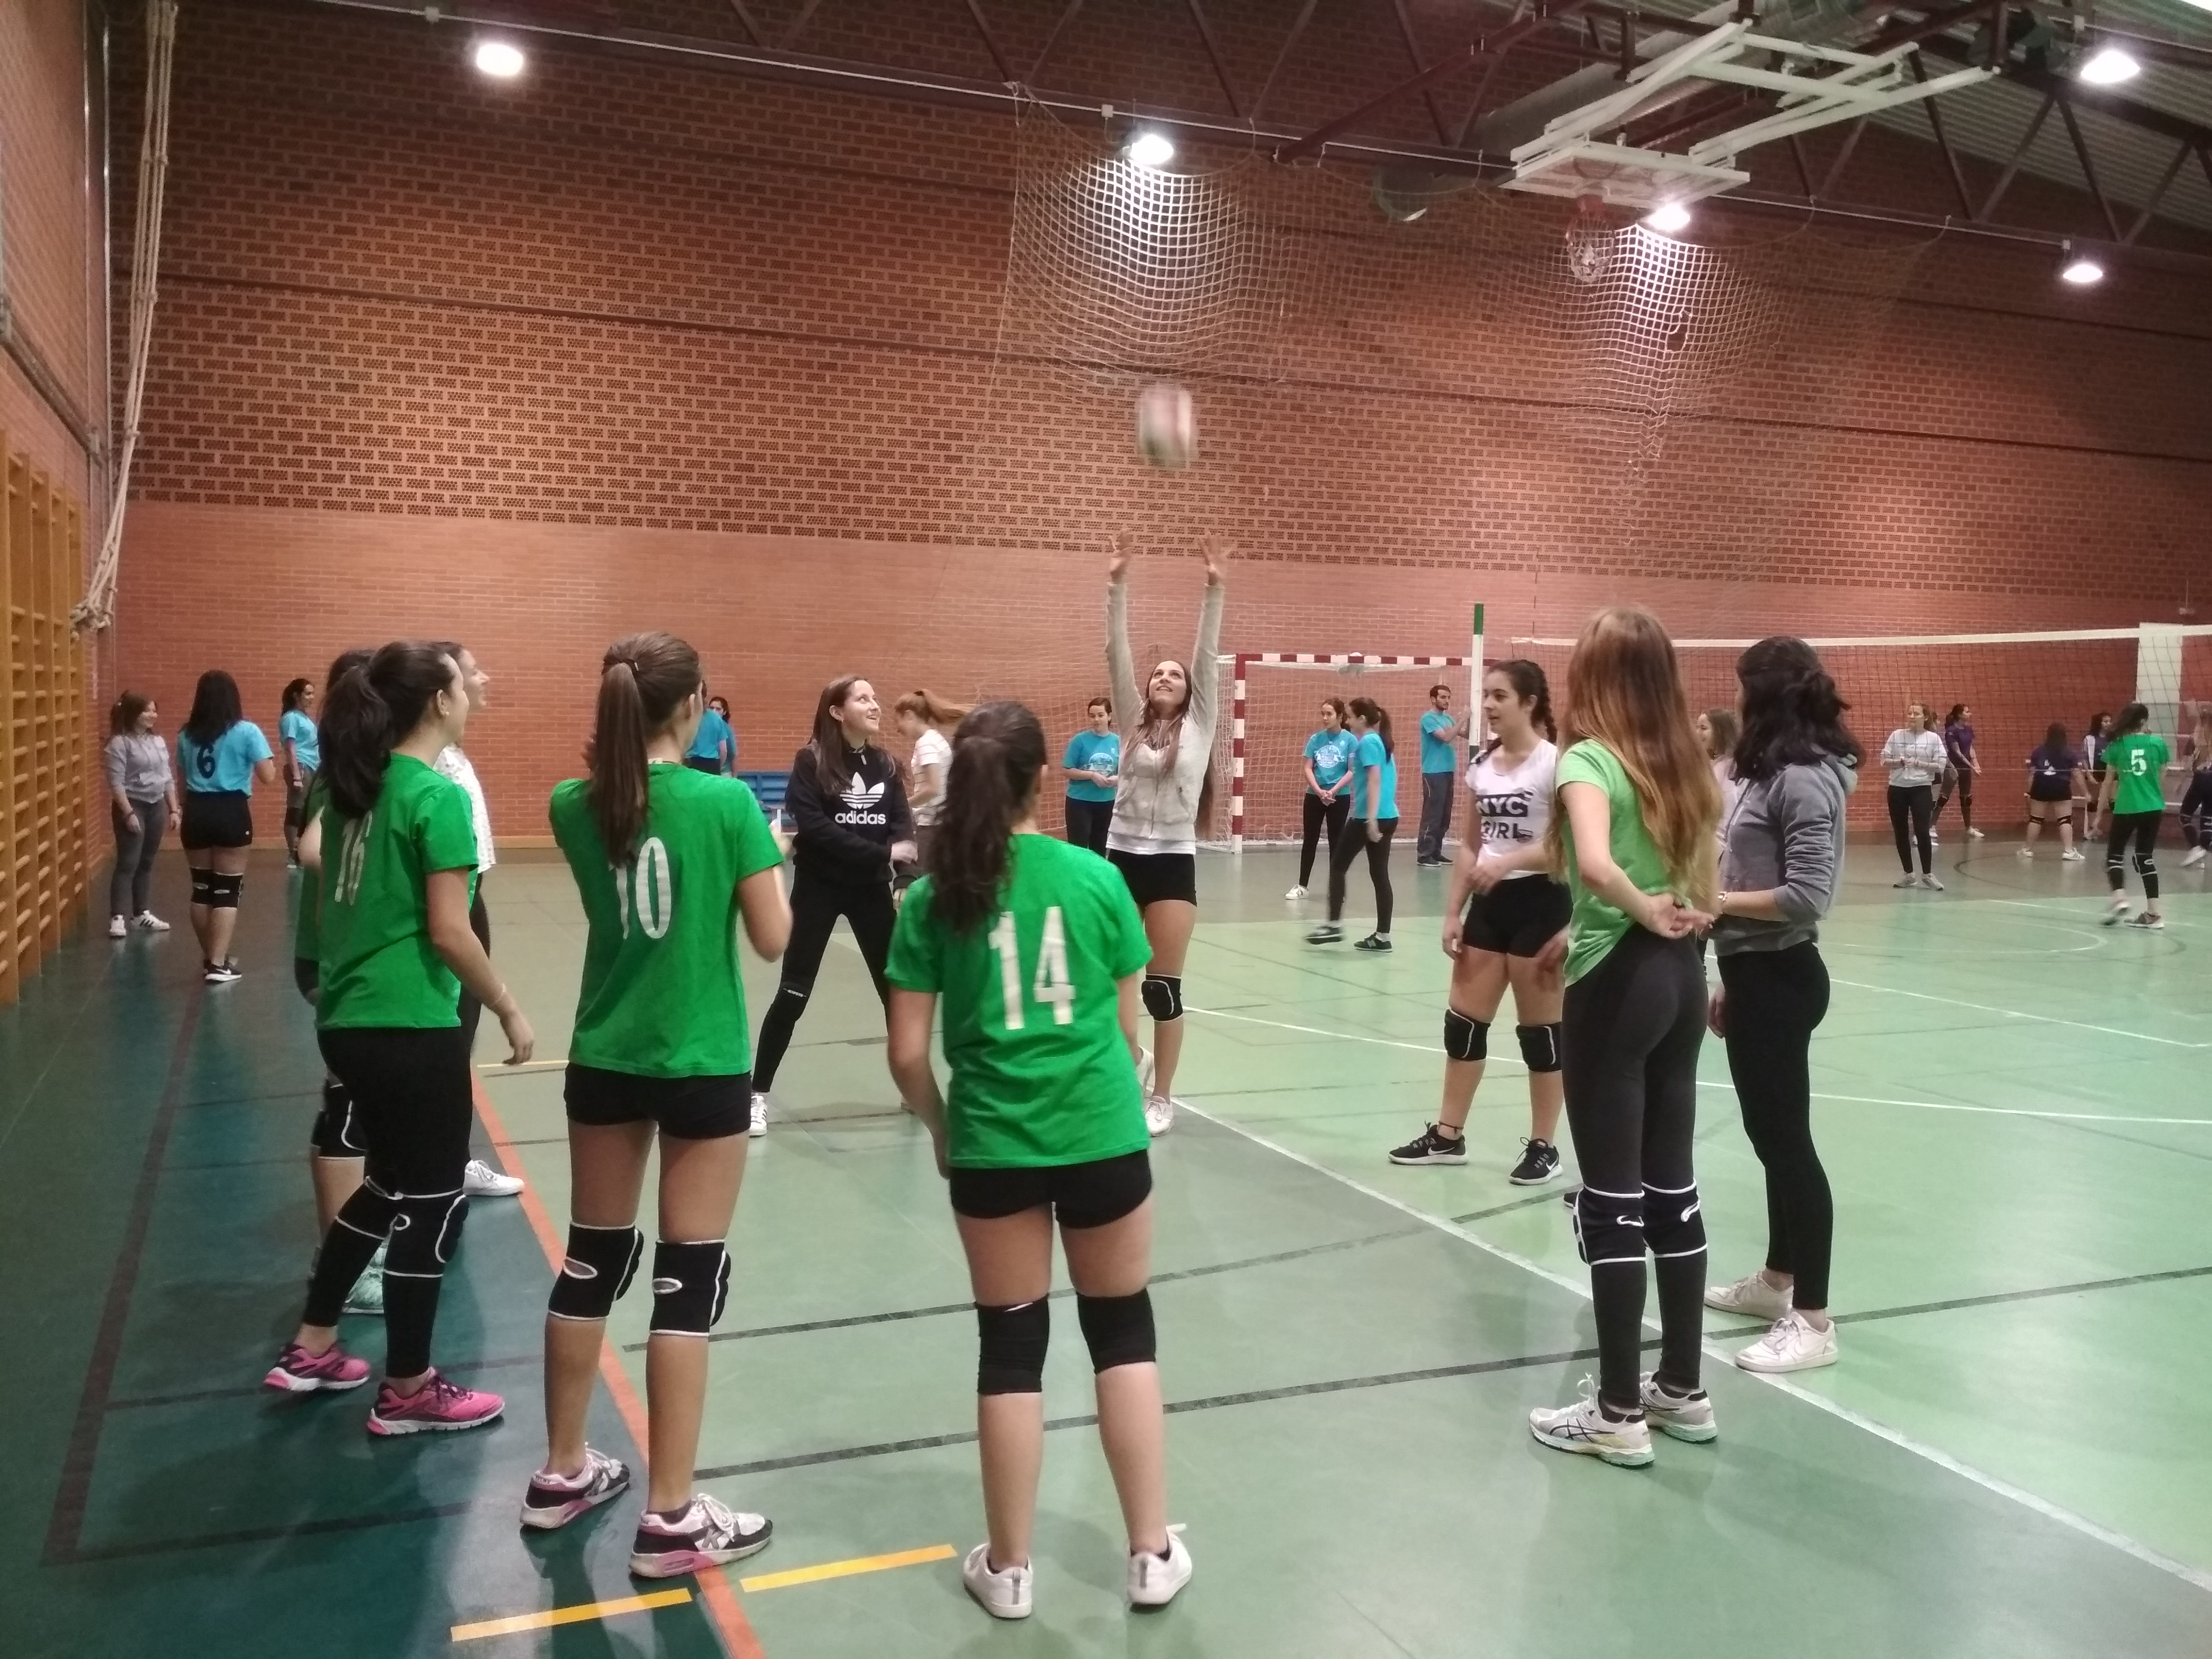 Deporte Escolar: El voleibol femenino triunfa en los encuentros de educación secundaria y bachillerato